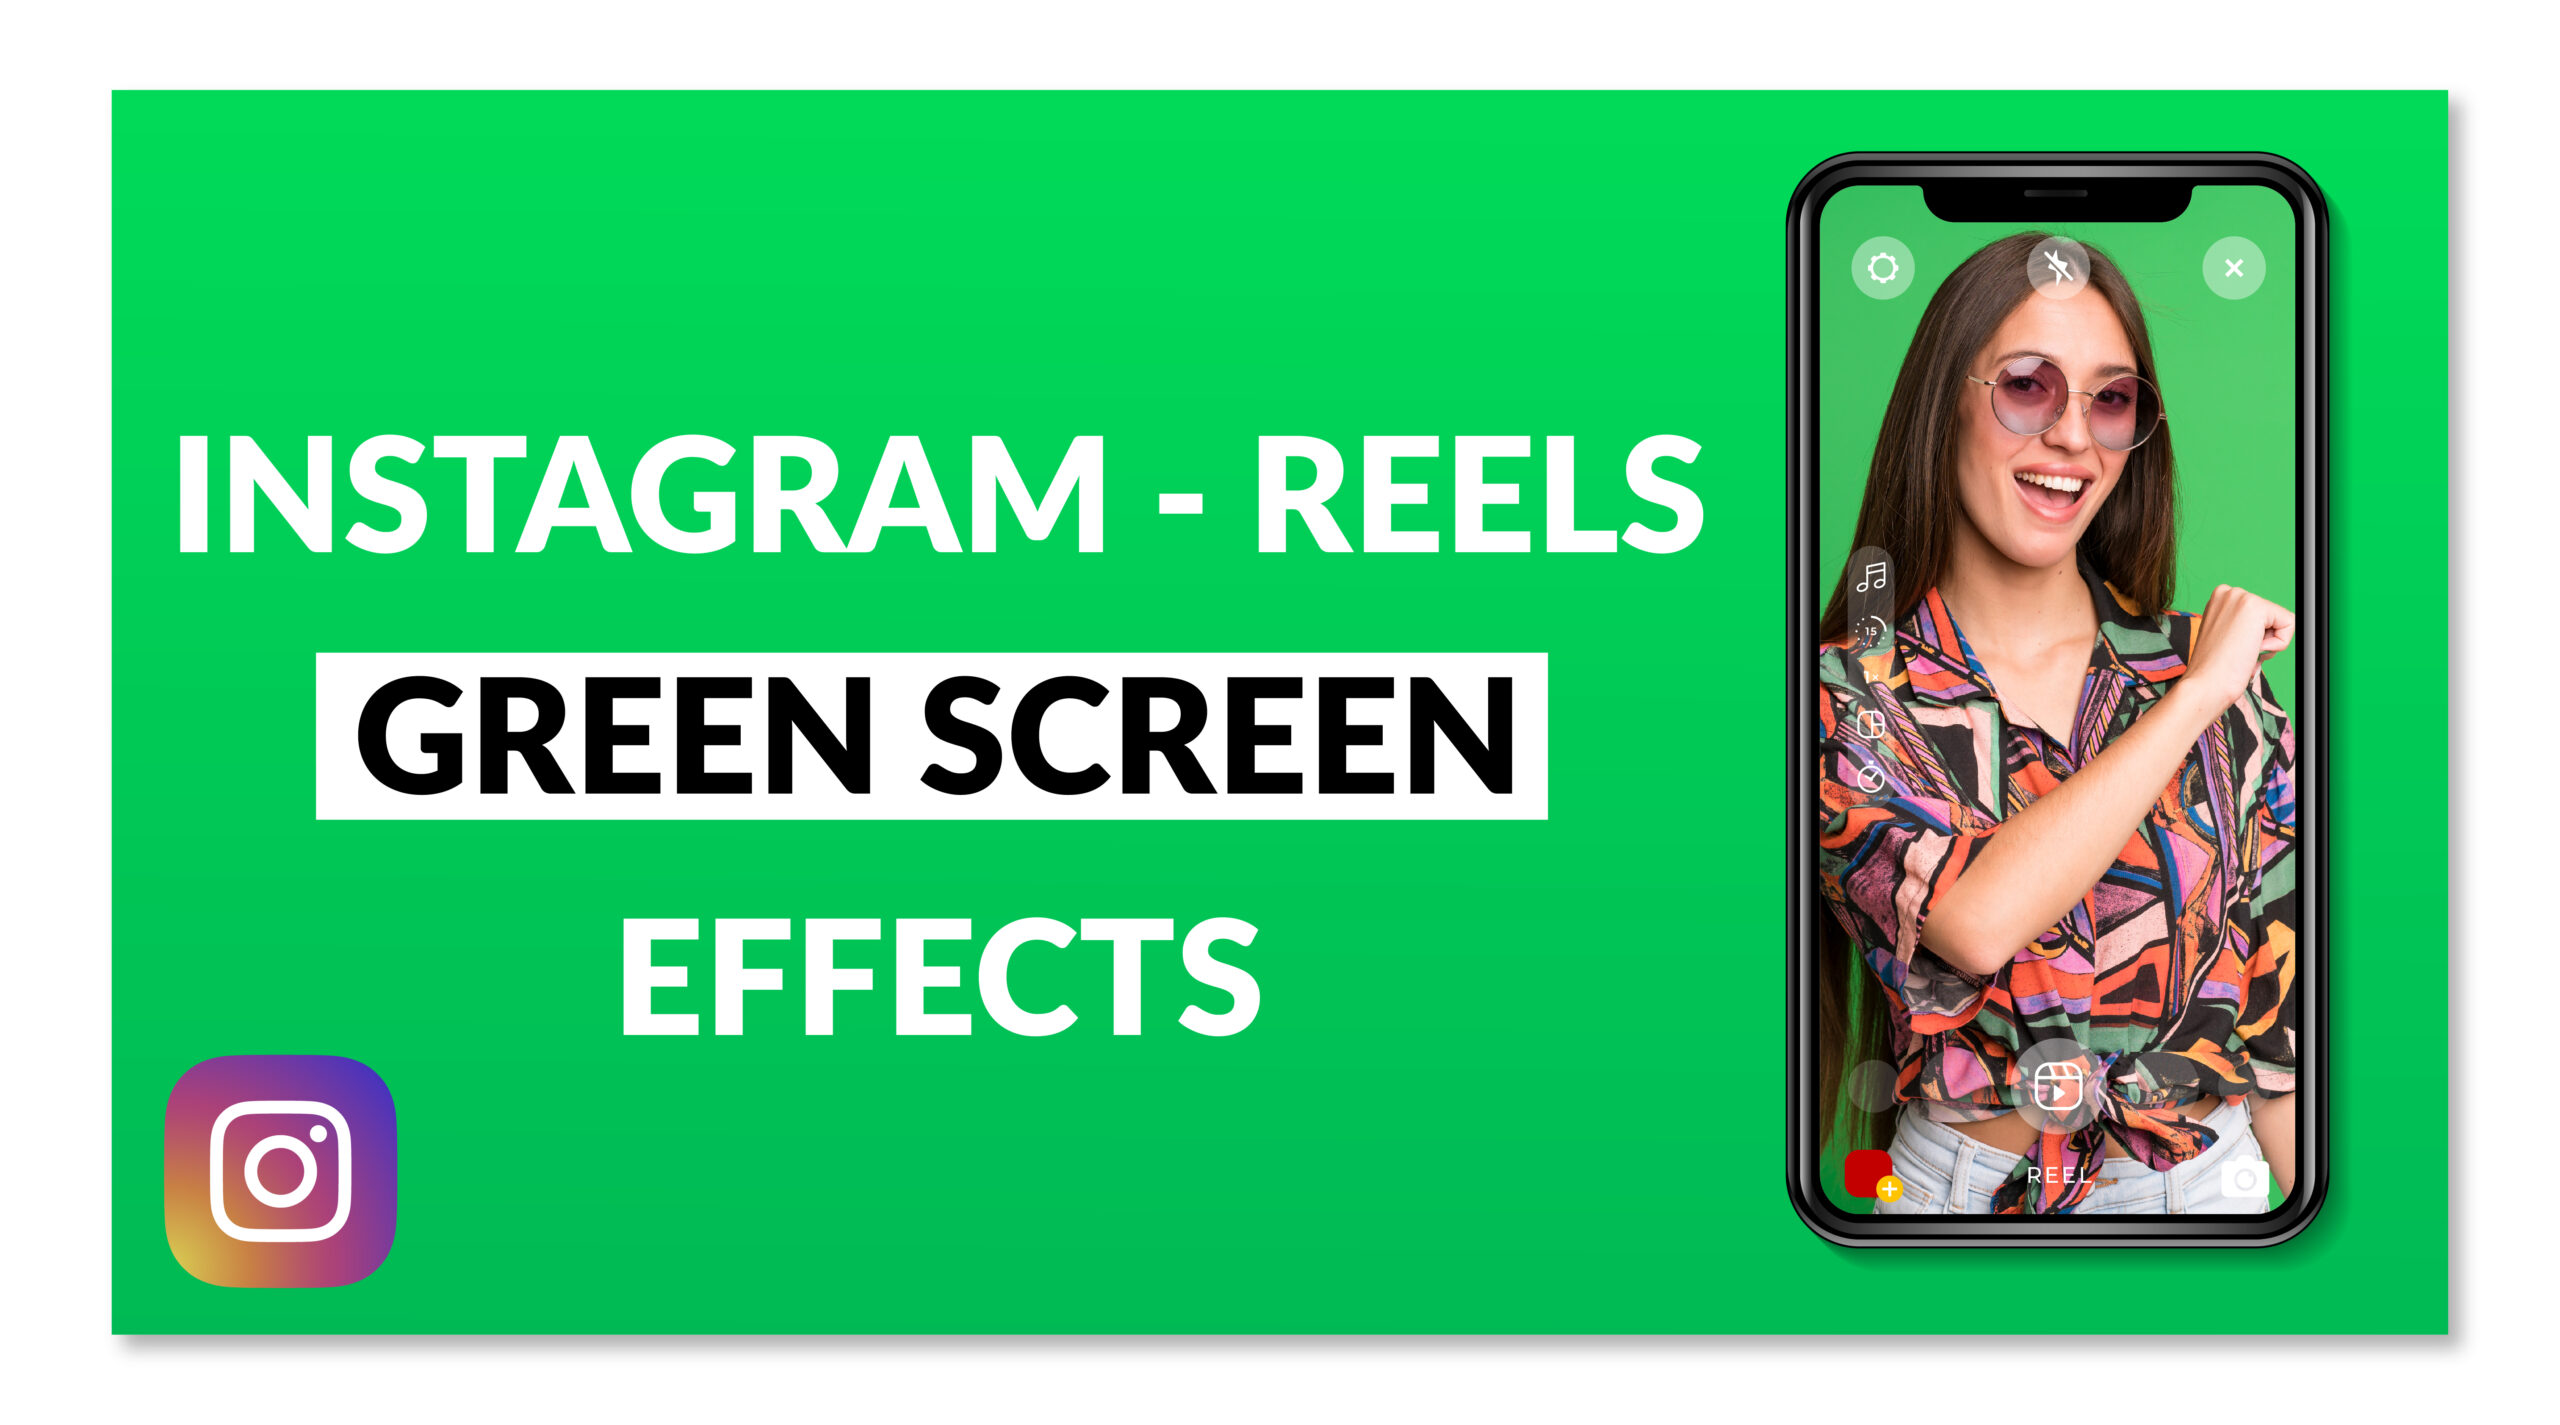 Green Screen Effect on Instagram